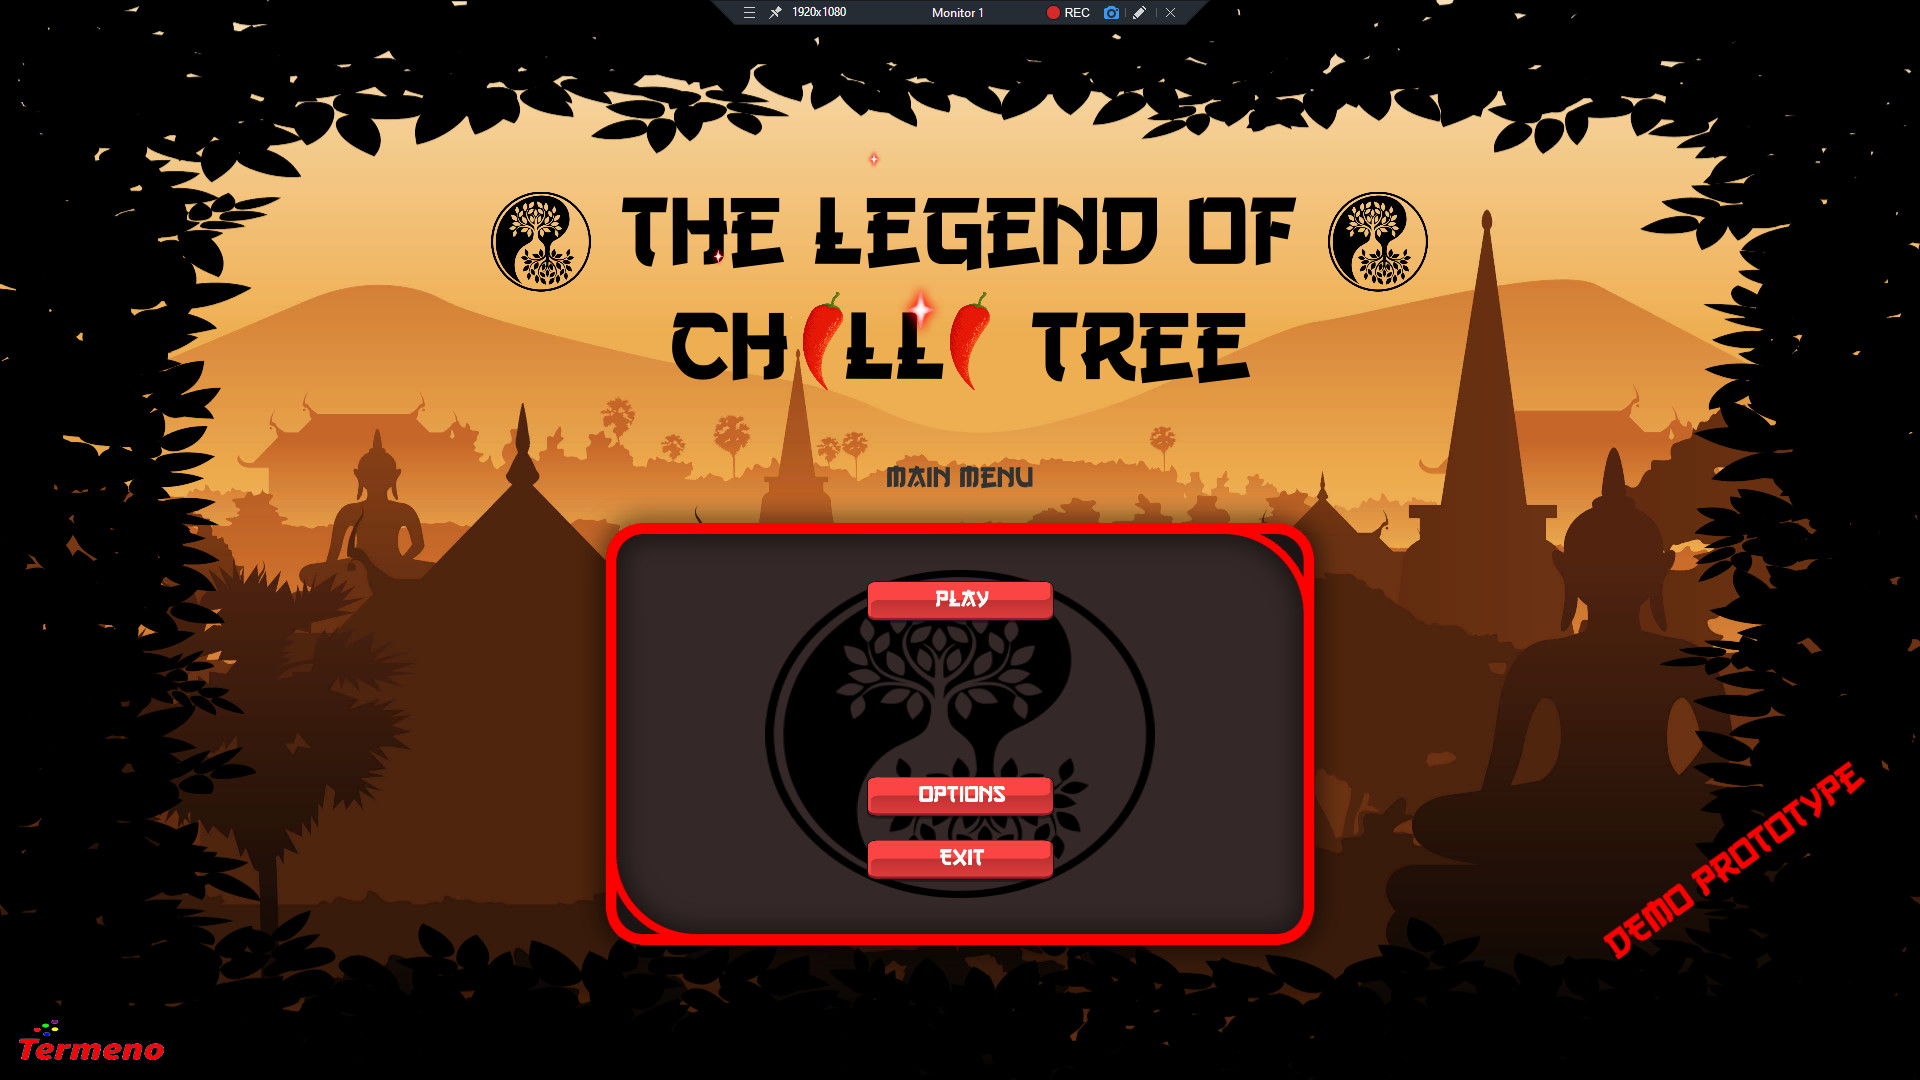 Legend of Chilli Tree Steam CD Key 0.69 USD